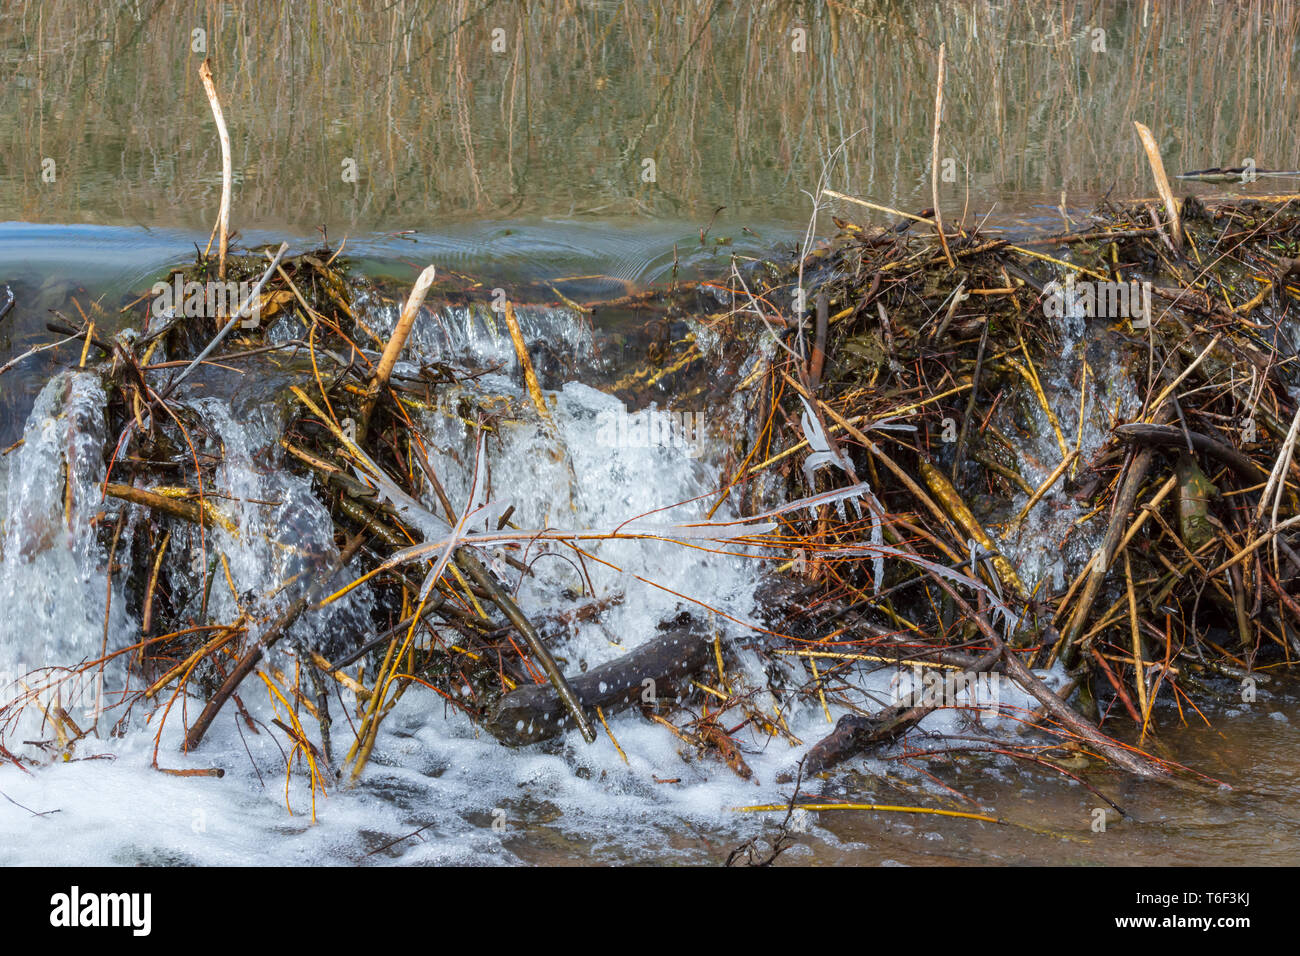 Runoff primaverile di acqua trabocca una diga americana di Beaver (Castor canadensis), Castle Rock Colorado USA. Foto scattata in aprile. Foto Stock